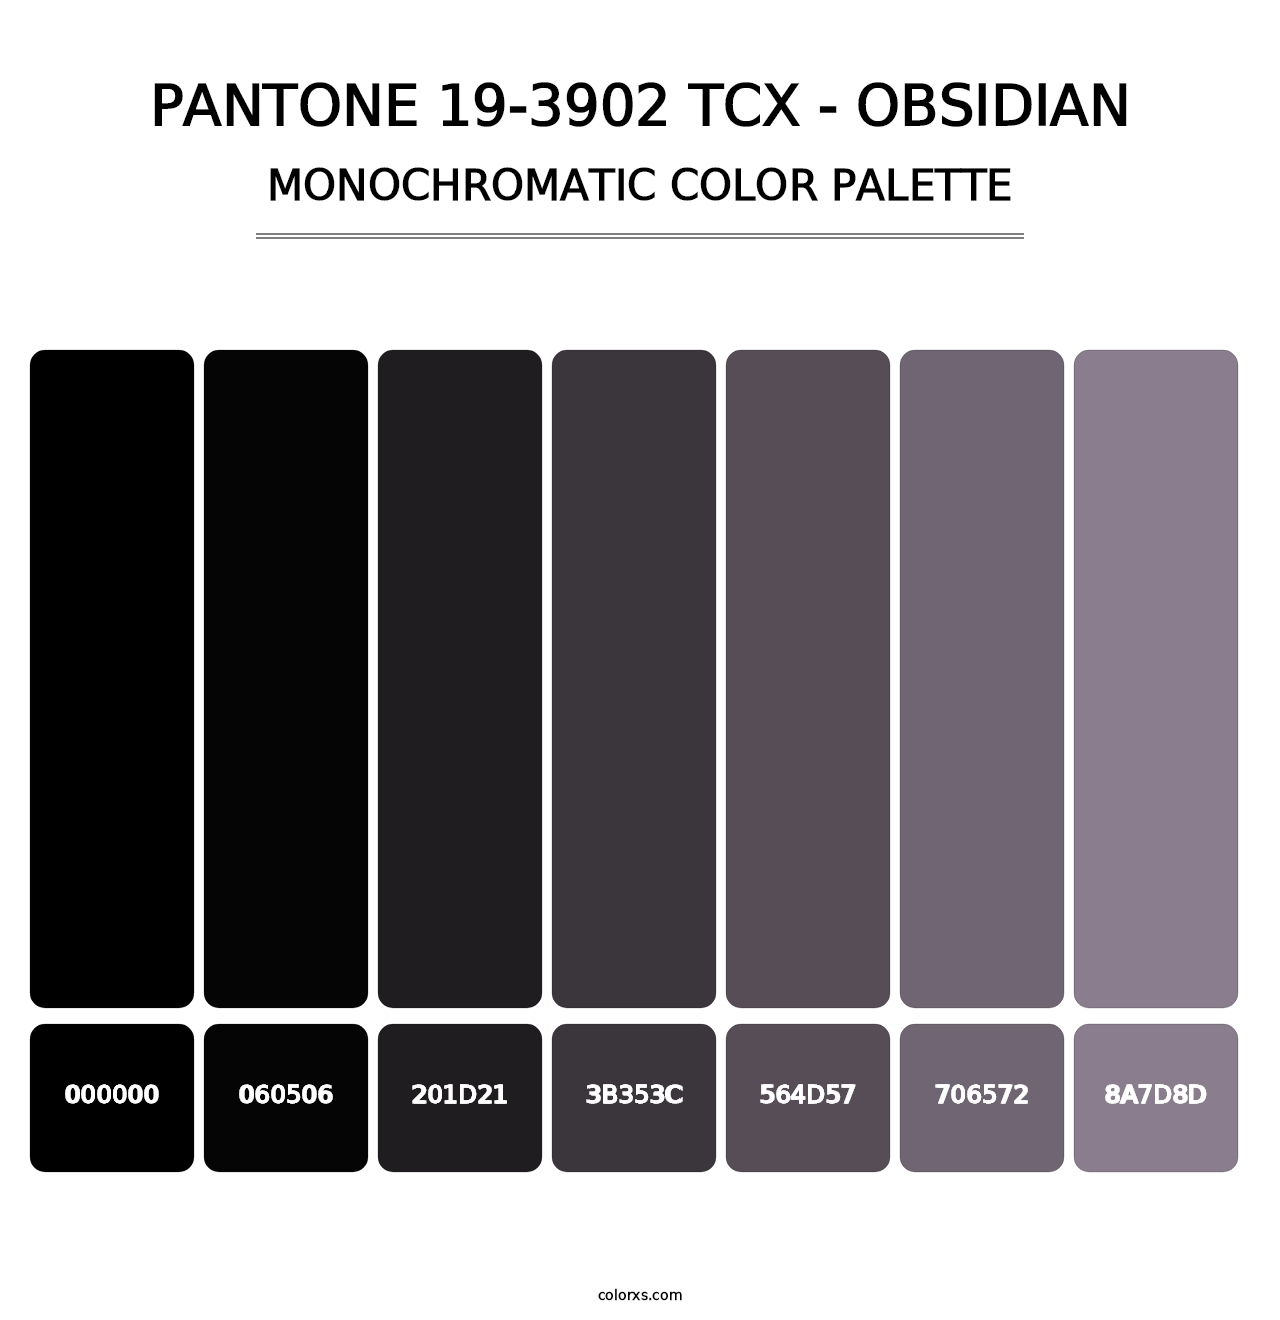 PANTONE 19-3902 TCX - Obsidian - Monochromatic Color Palette